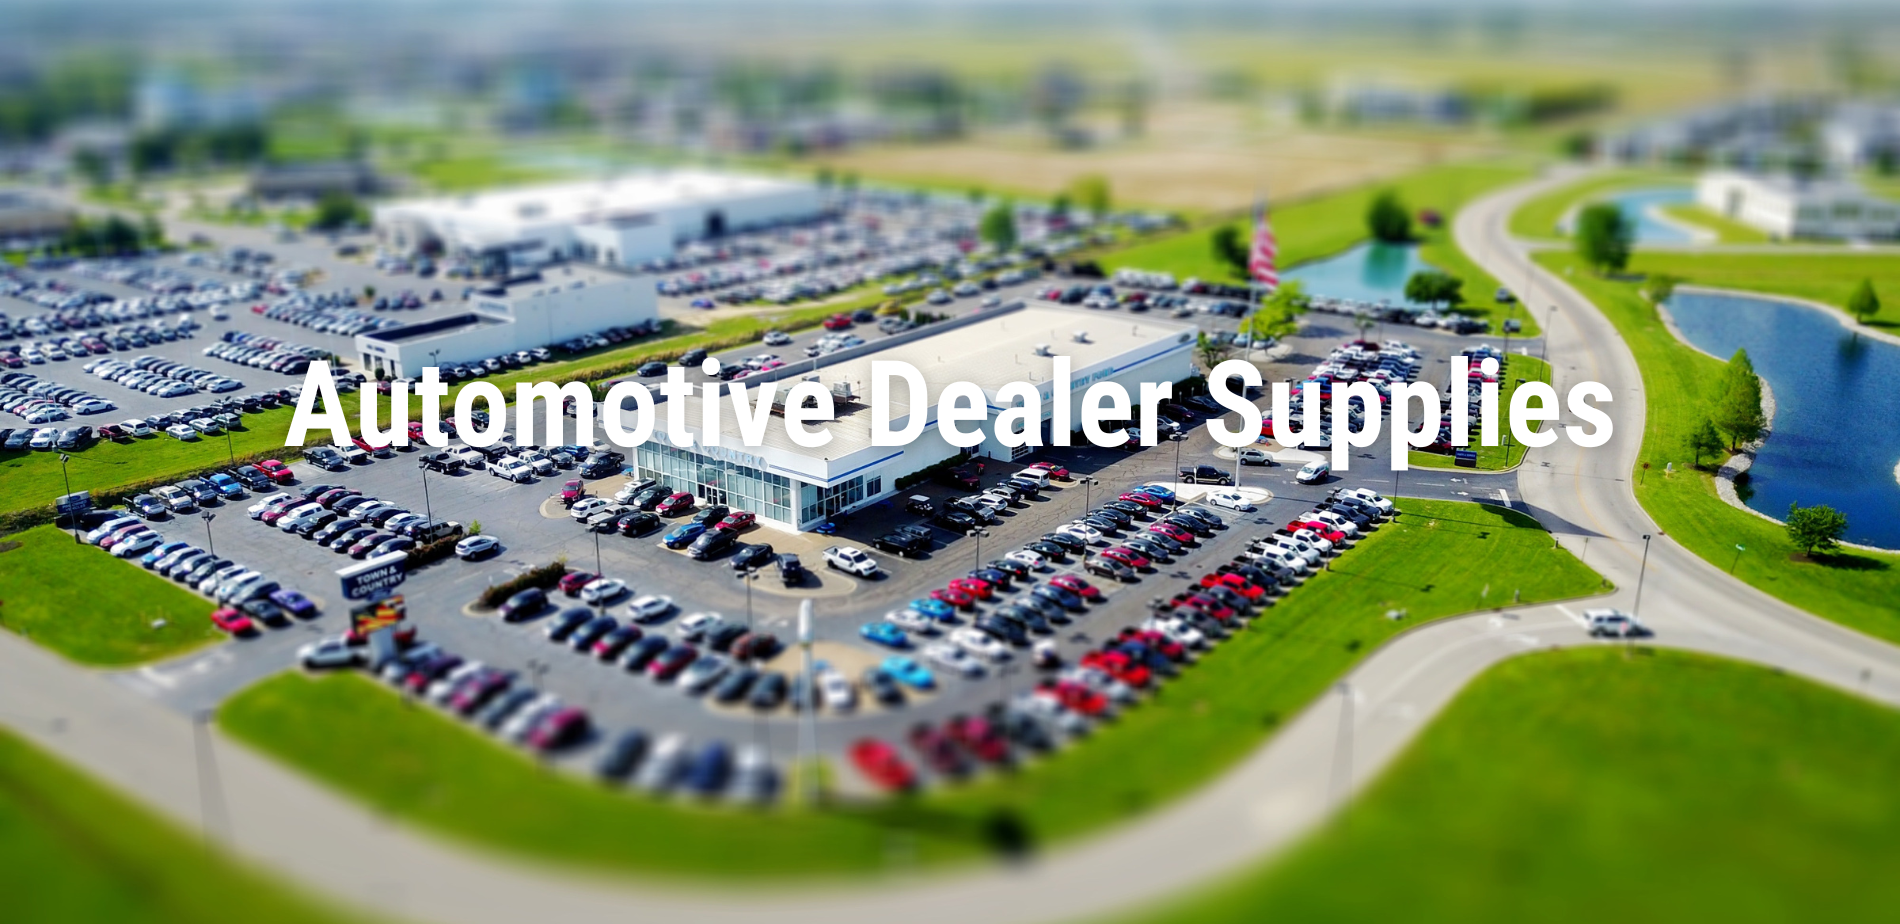 Automotive dealer supplies 3